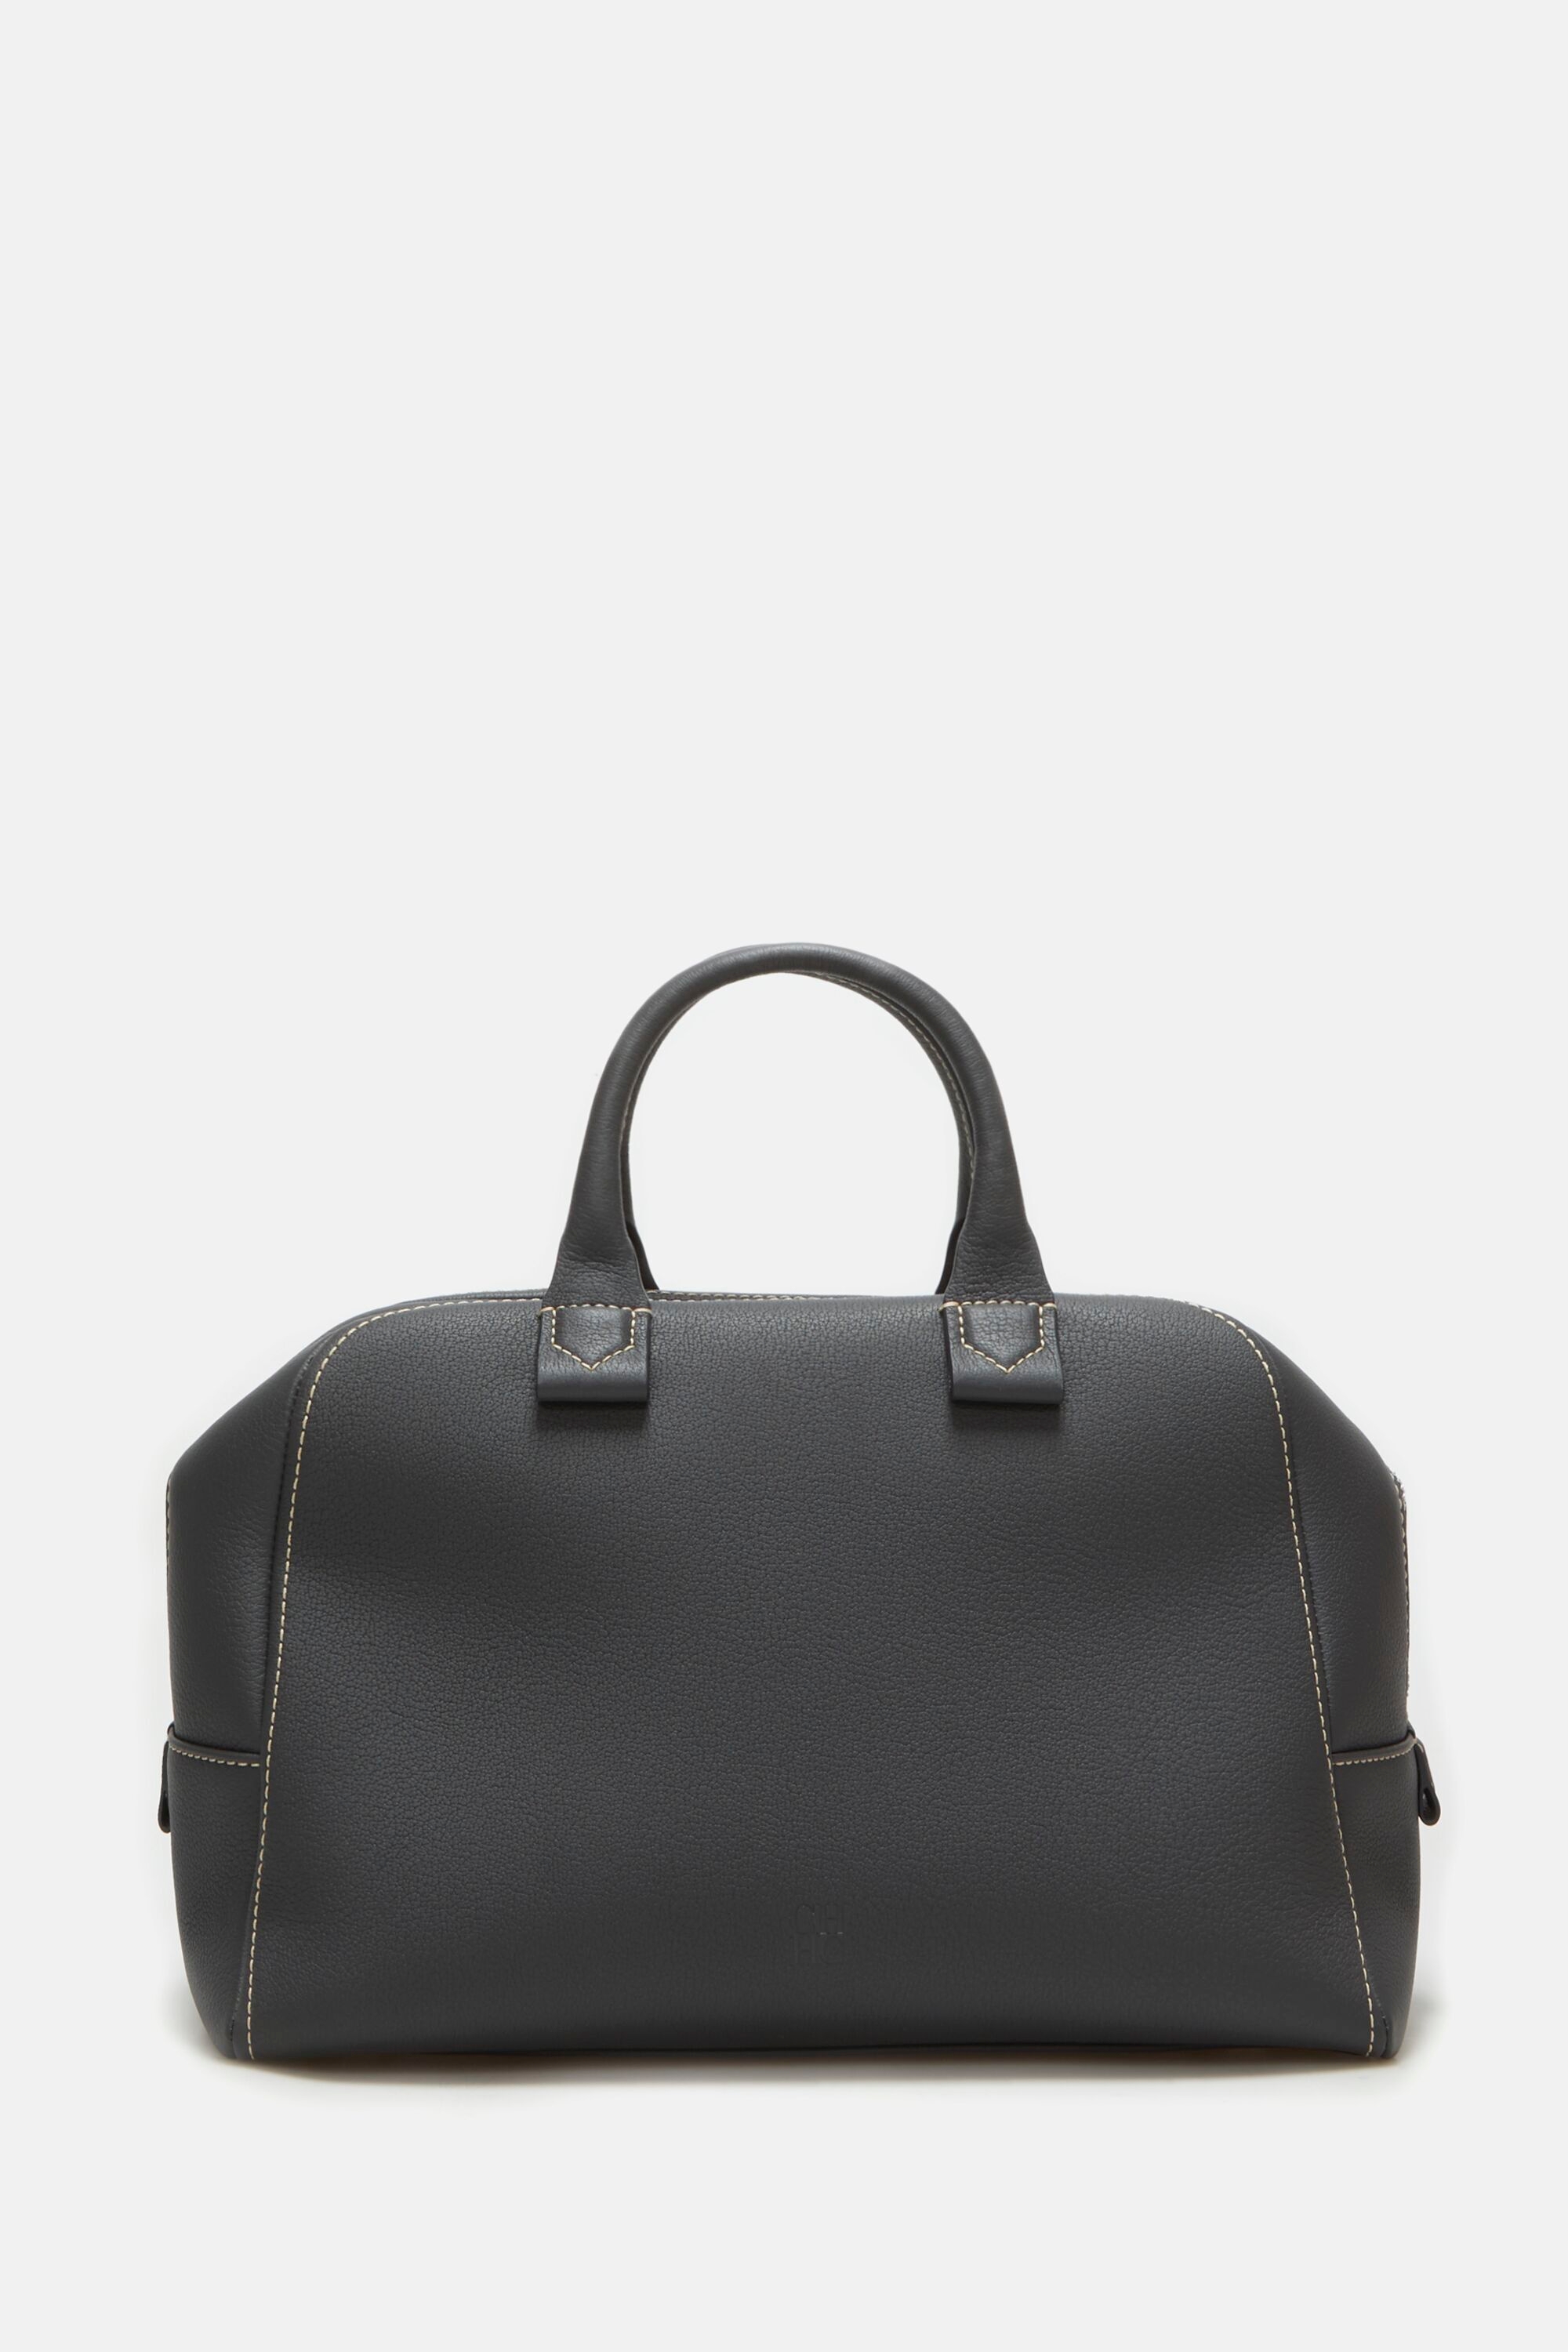 Blasón S | Medium handbag gray - CH Carolina Herrera United States